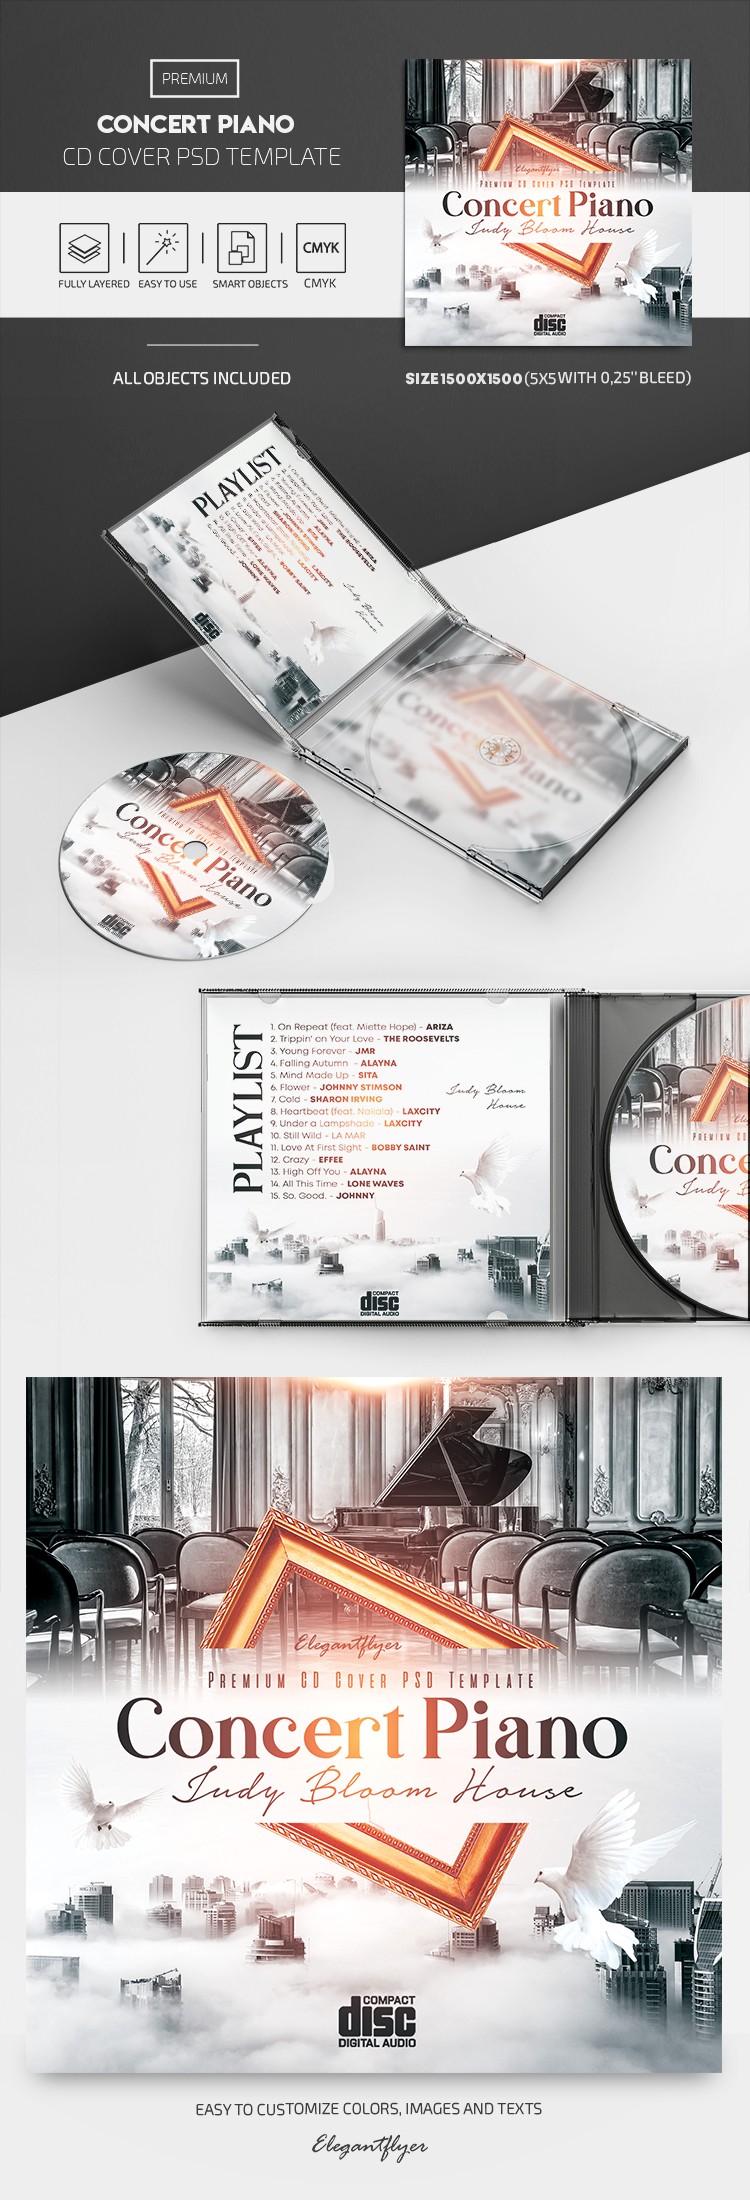 Couverture de CD de concert de piano by ElegantFlyer